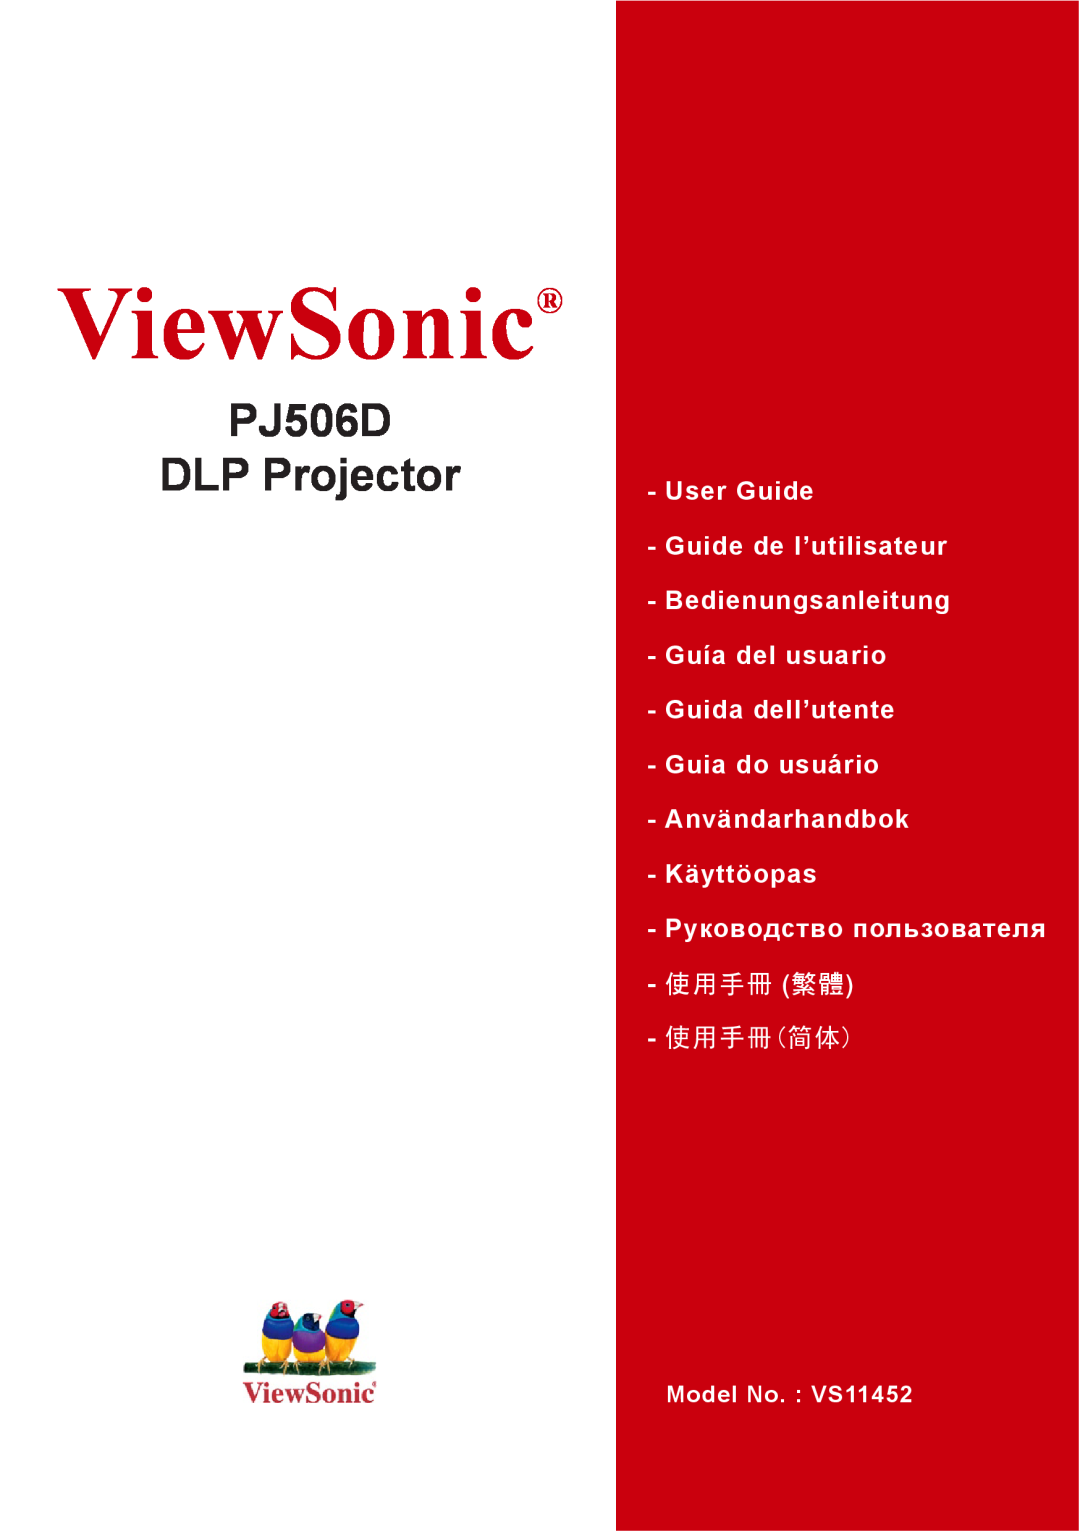 ViewSonic VS11452 manual ViewSonic, PJ506D DLP Projector, User Guide Guide de l’utilisateur Bedienungsanleitung, 使用手冊 繁體 